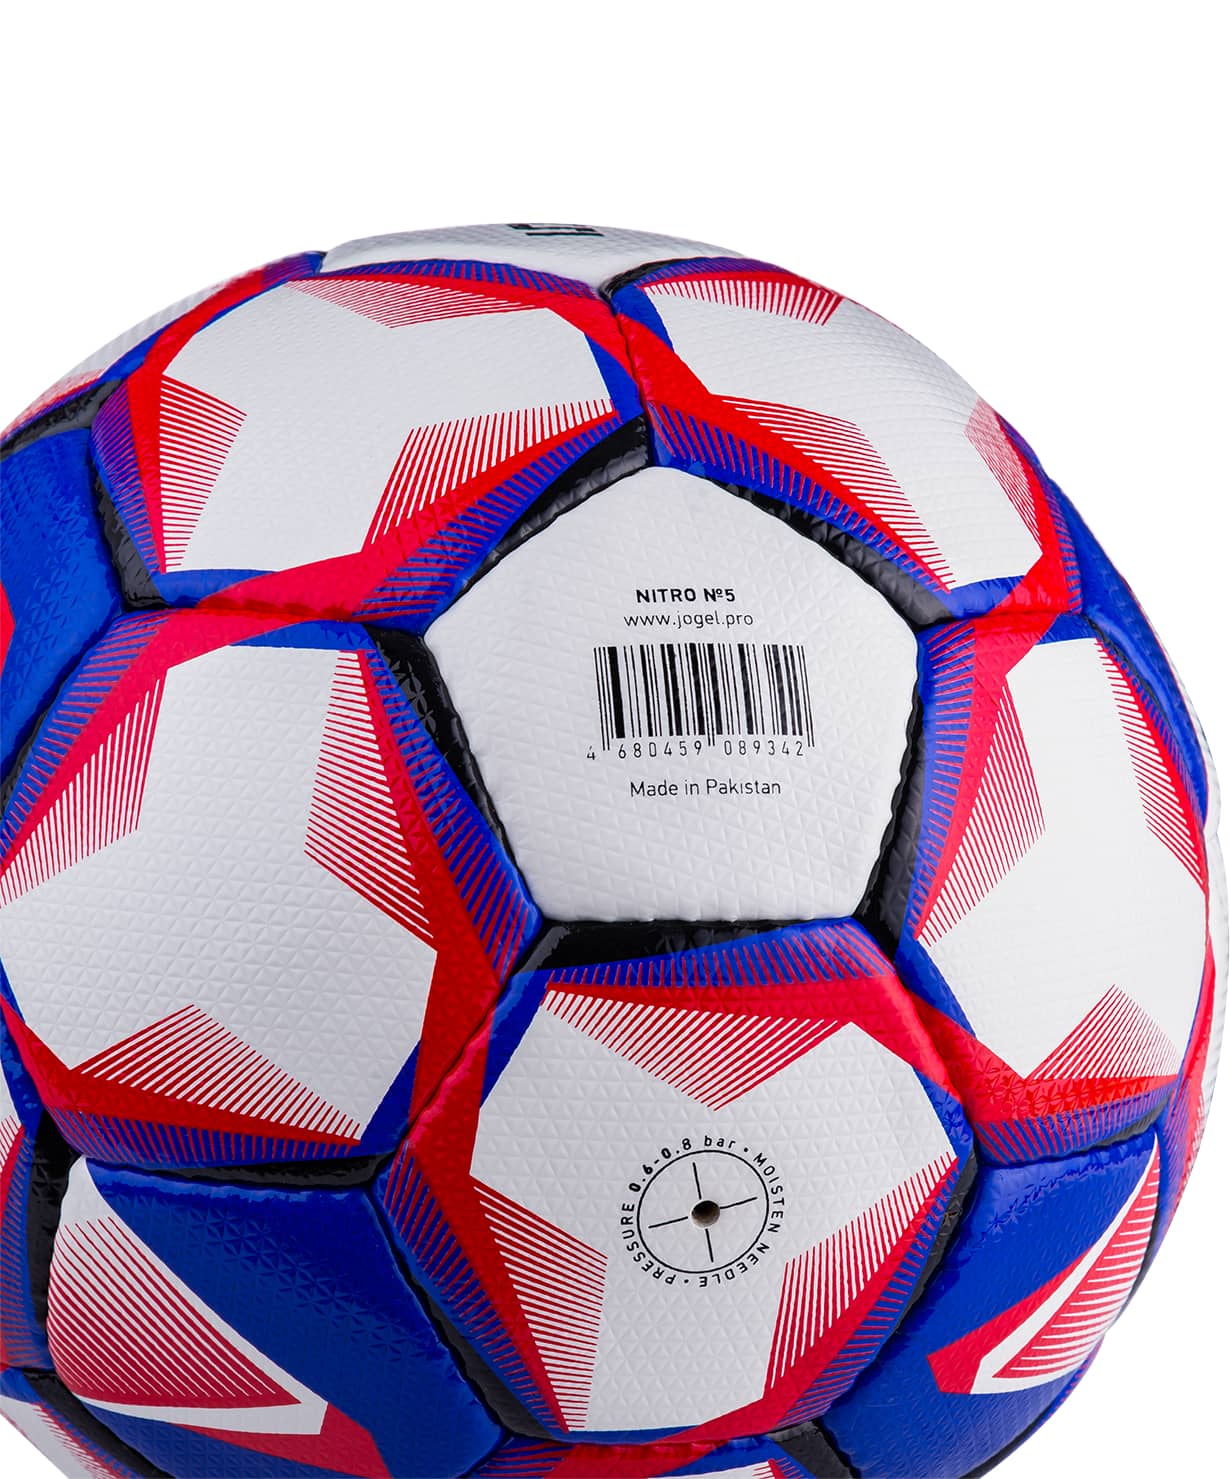 фото Jogel Nitro мяч футбольный размер 5 Football-54 